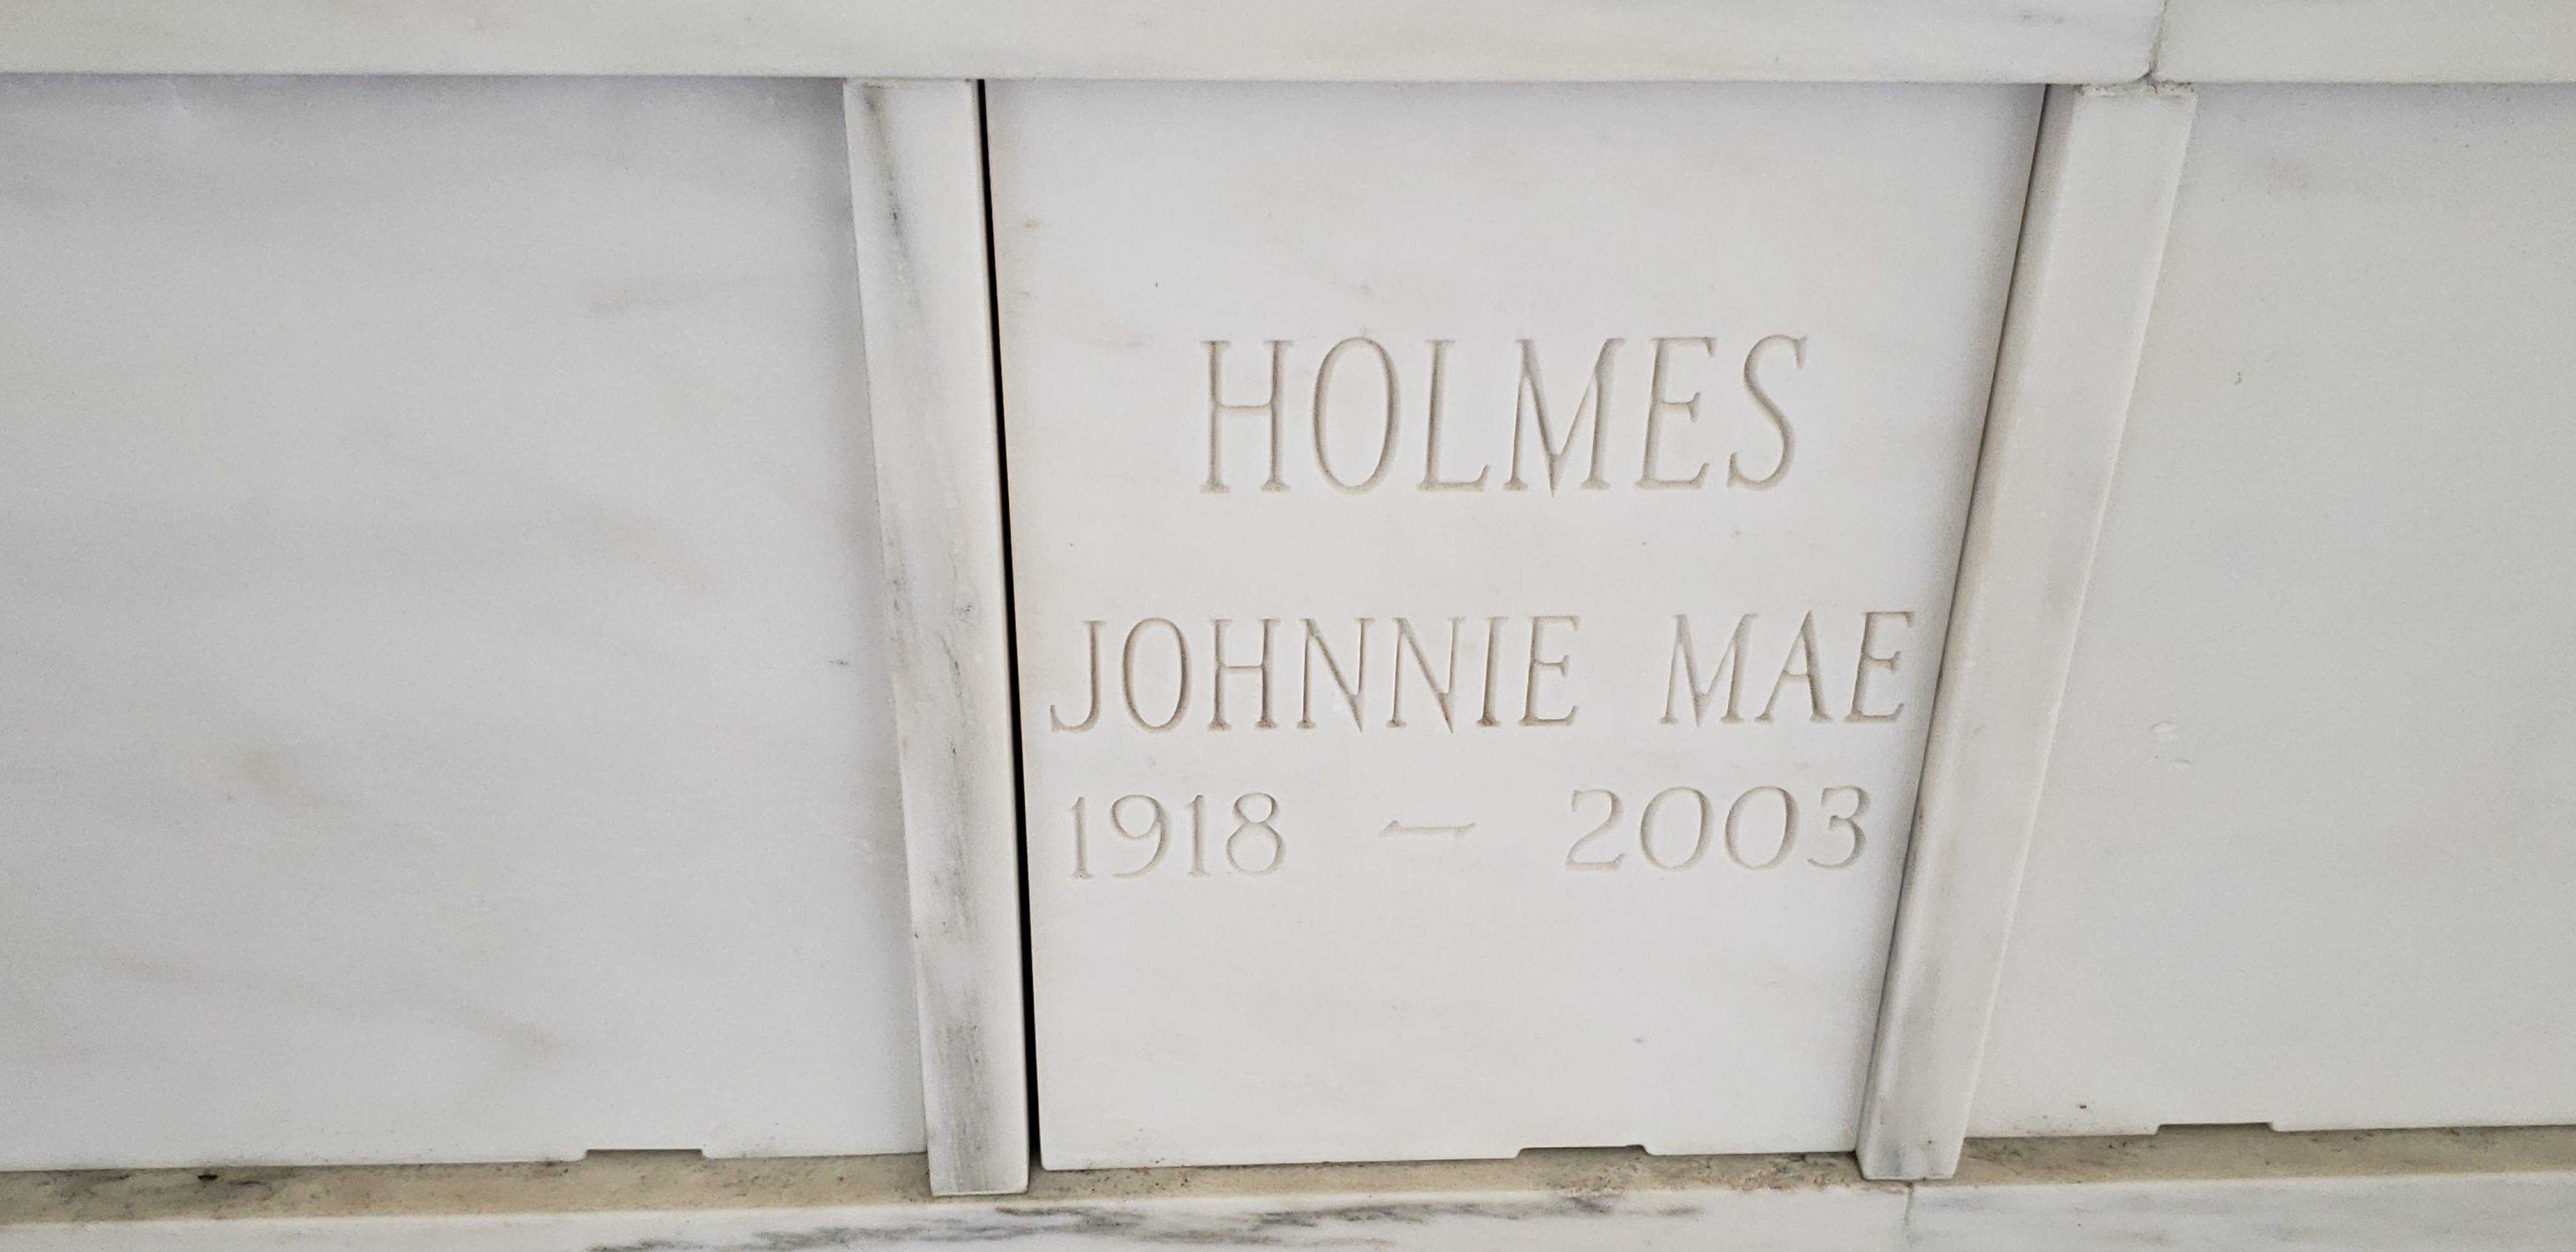 Johnnie Mae Holmes